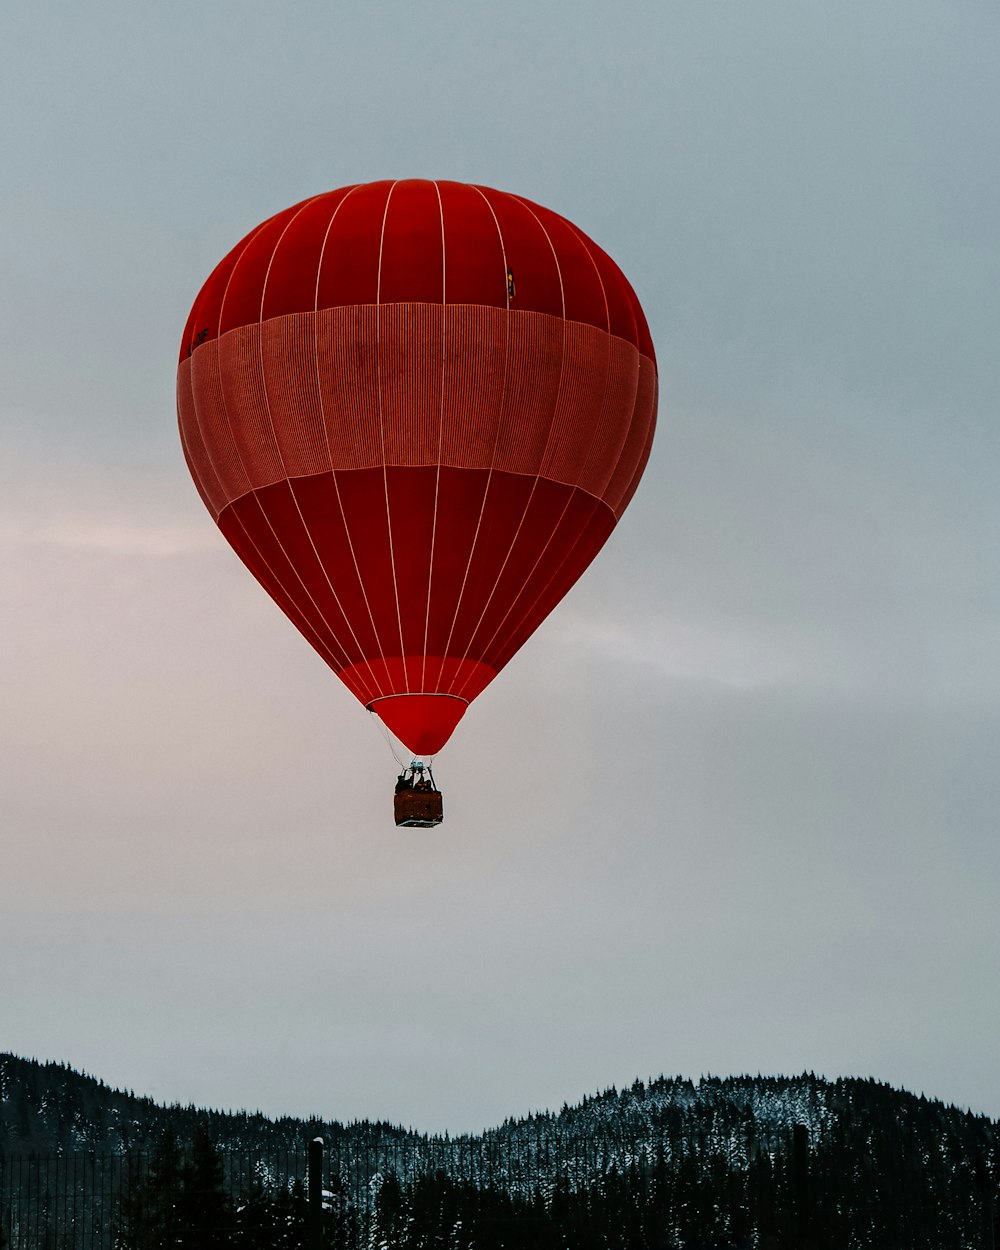 昼間の空中での赤い熱気球